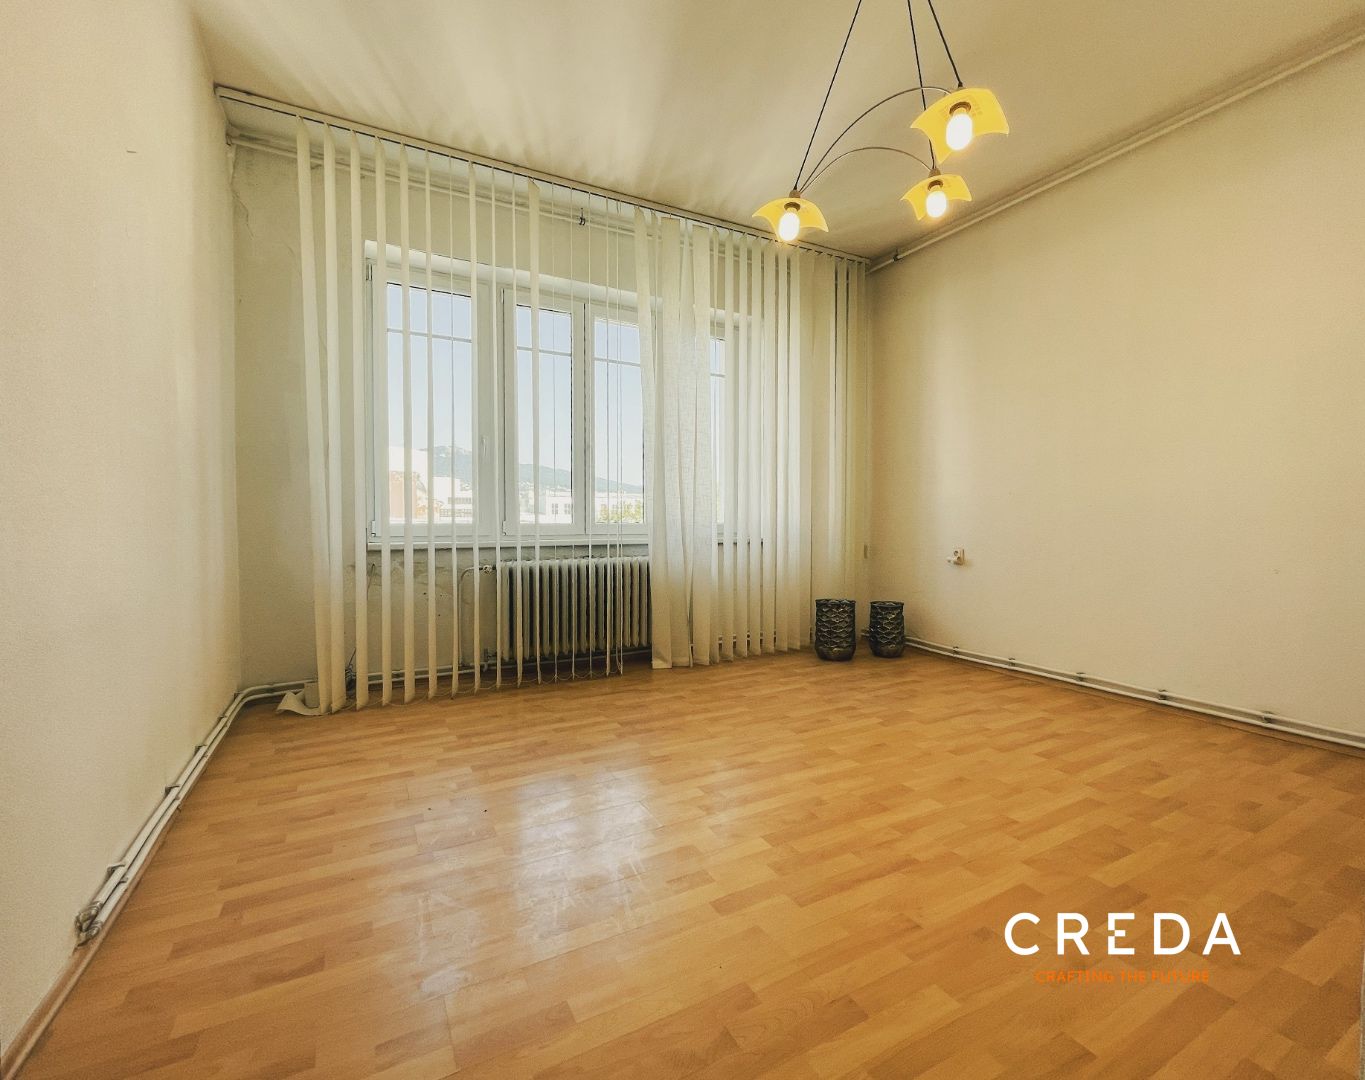 CREDA | predaj 3 izb byt / administratívny priestor centrum